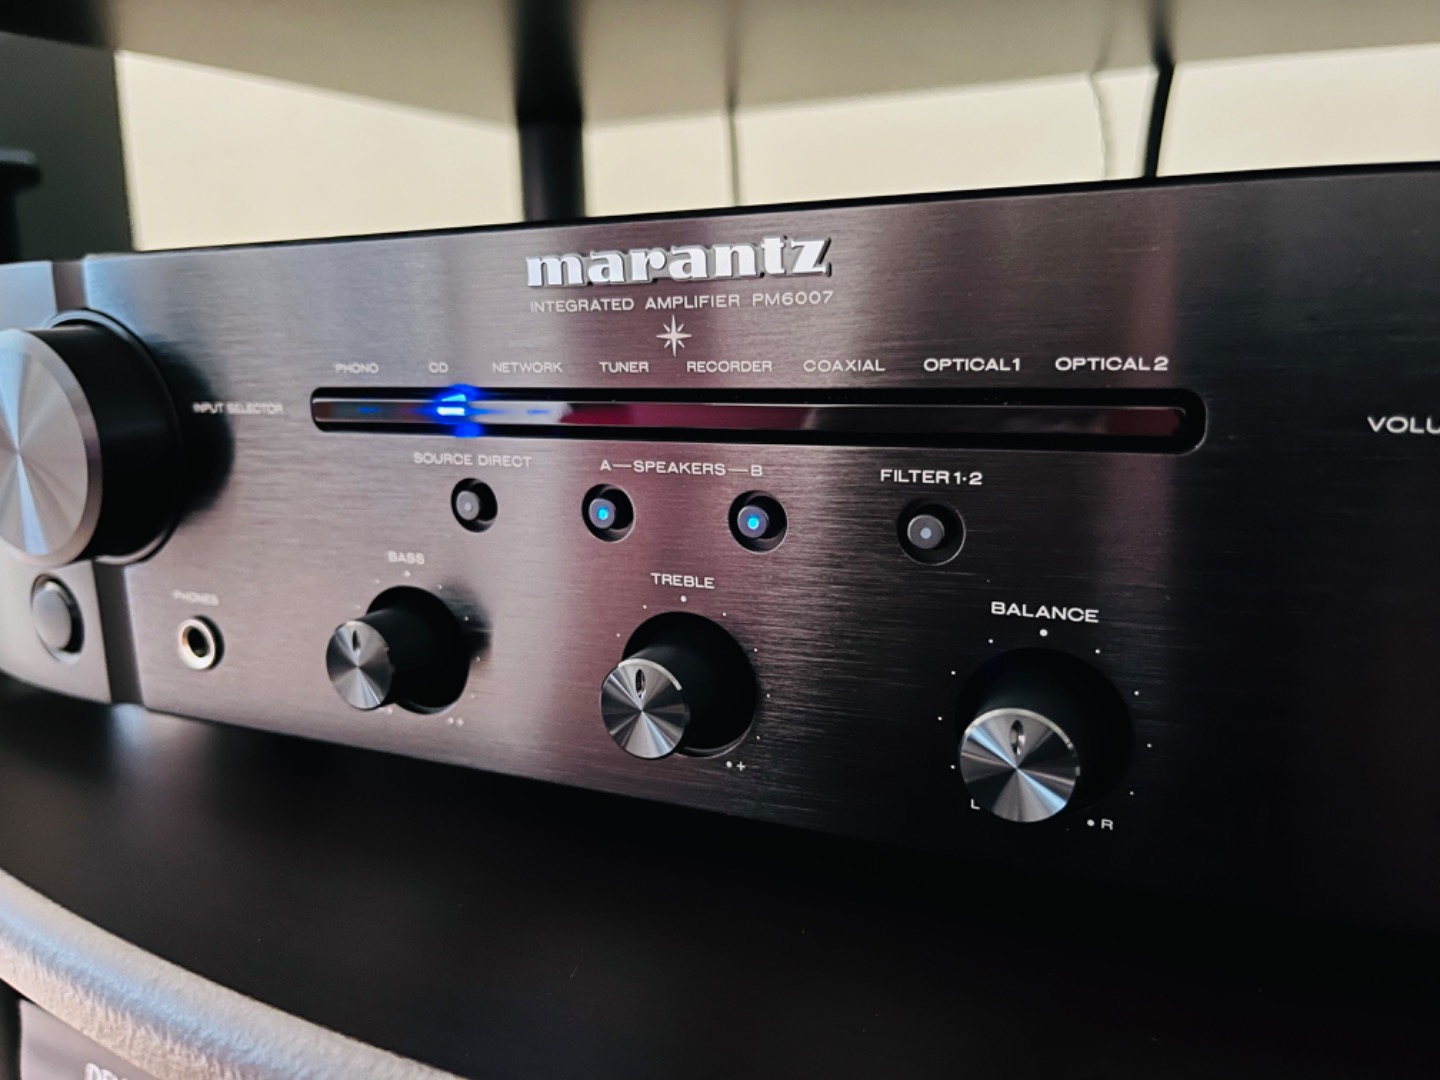 Marantz PM6007 amplifier review